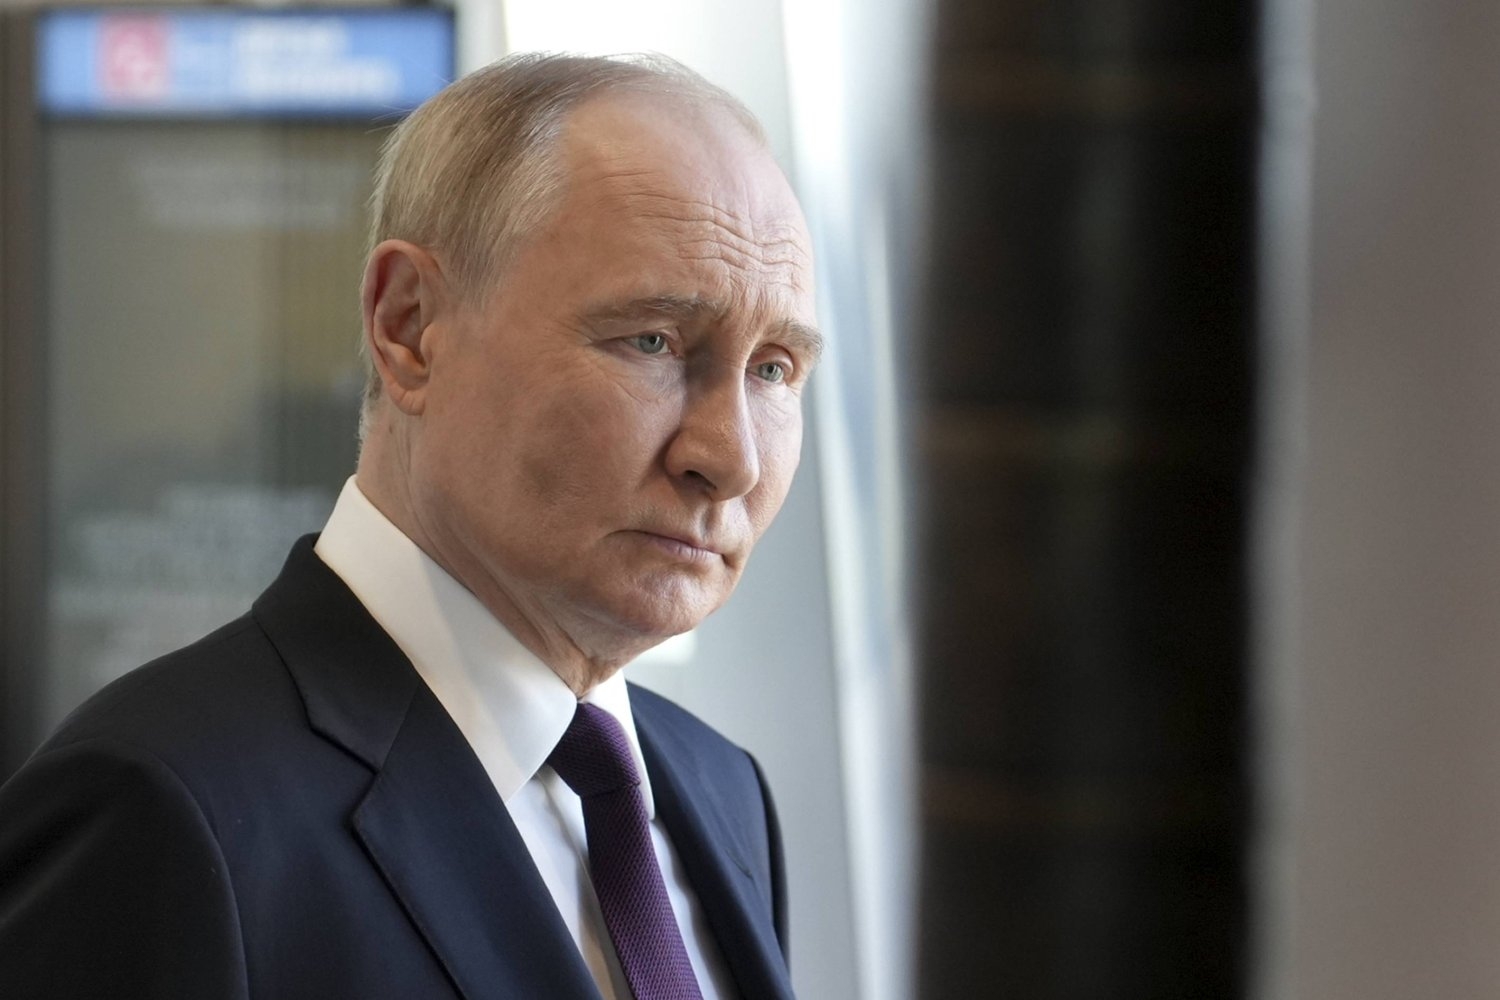 بوتين: التهم الموجهة لترمب ذات دوافع سياسية